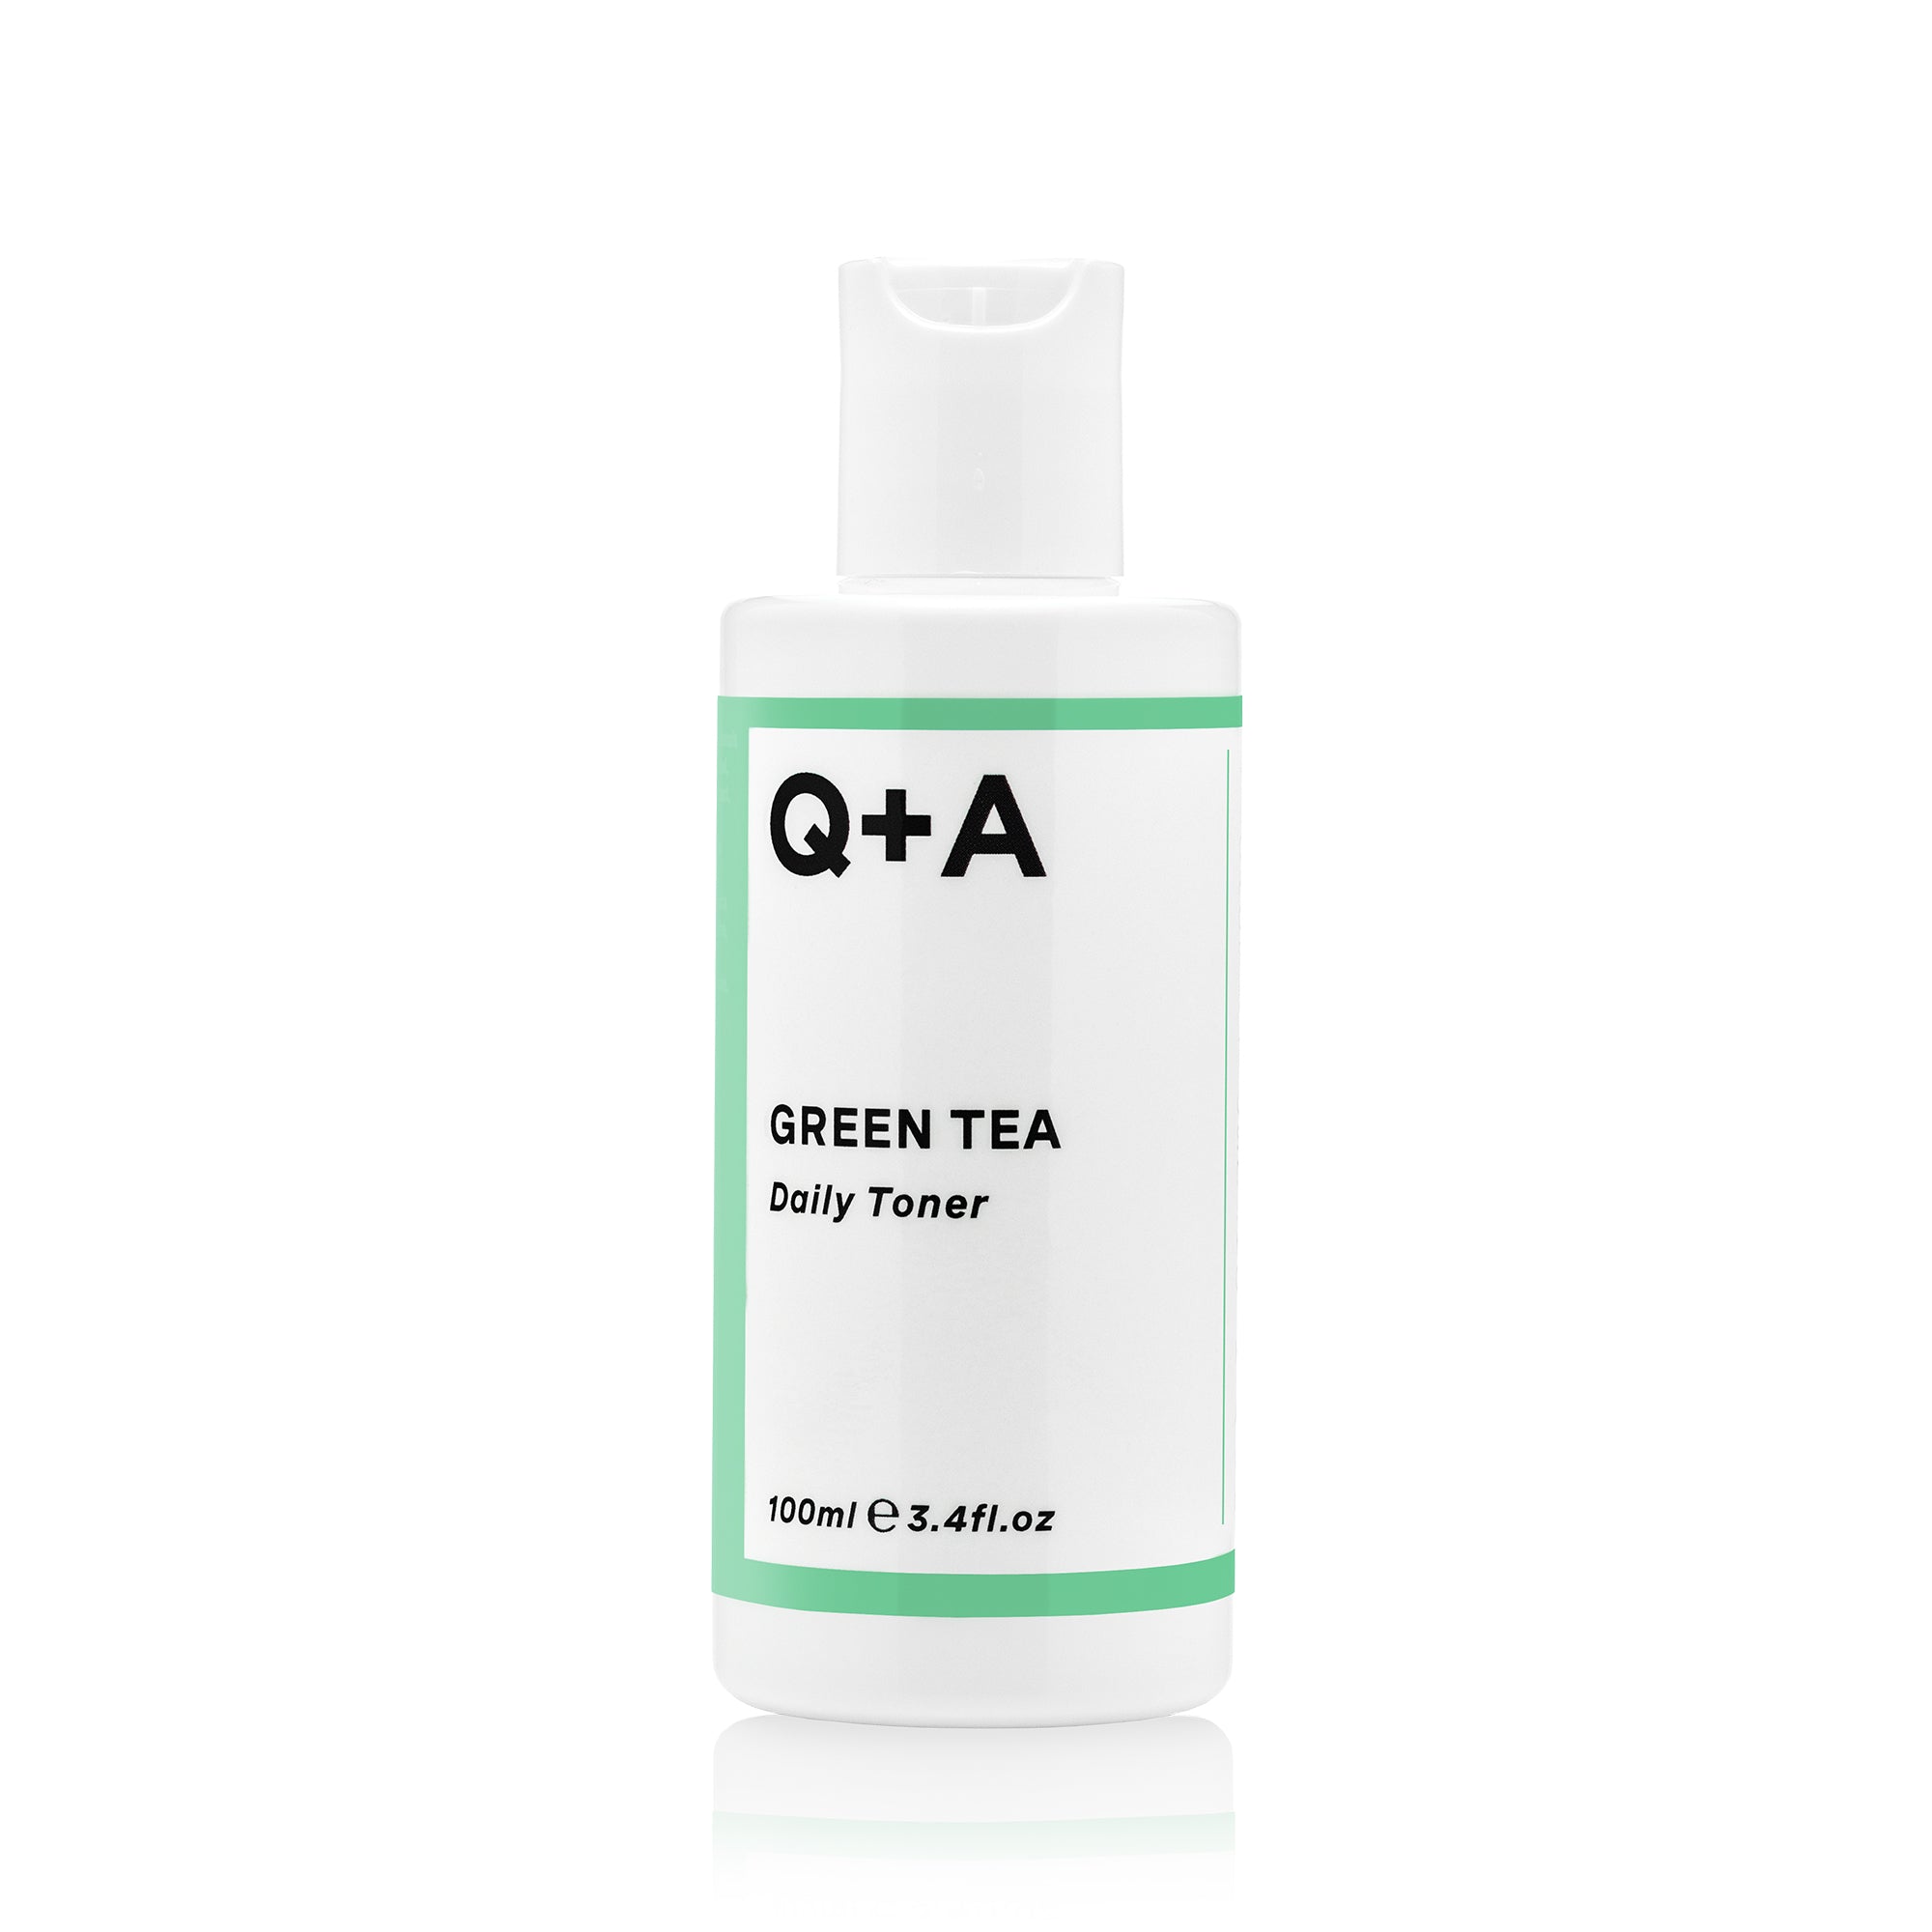 Q+A Green Tea Toner Bottle